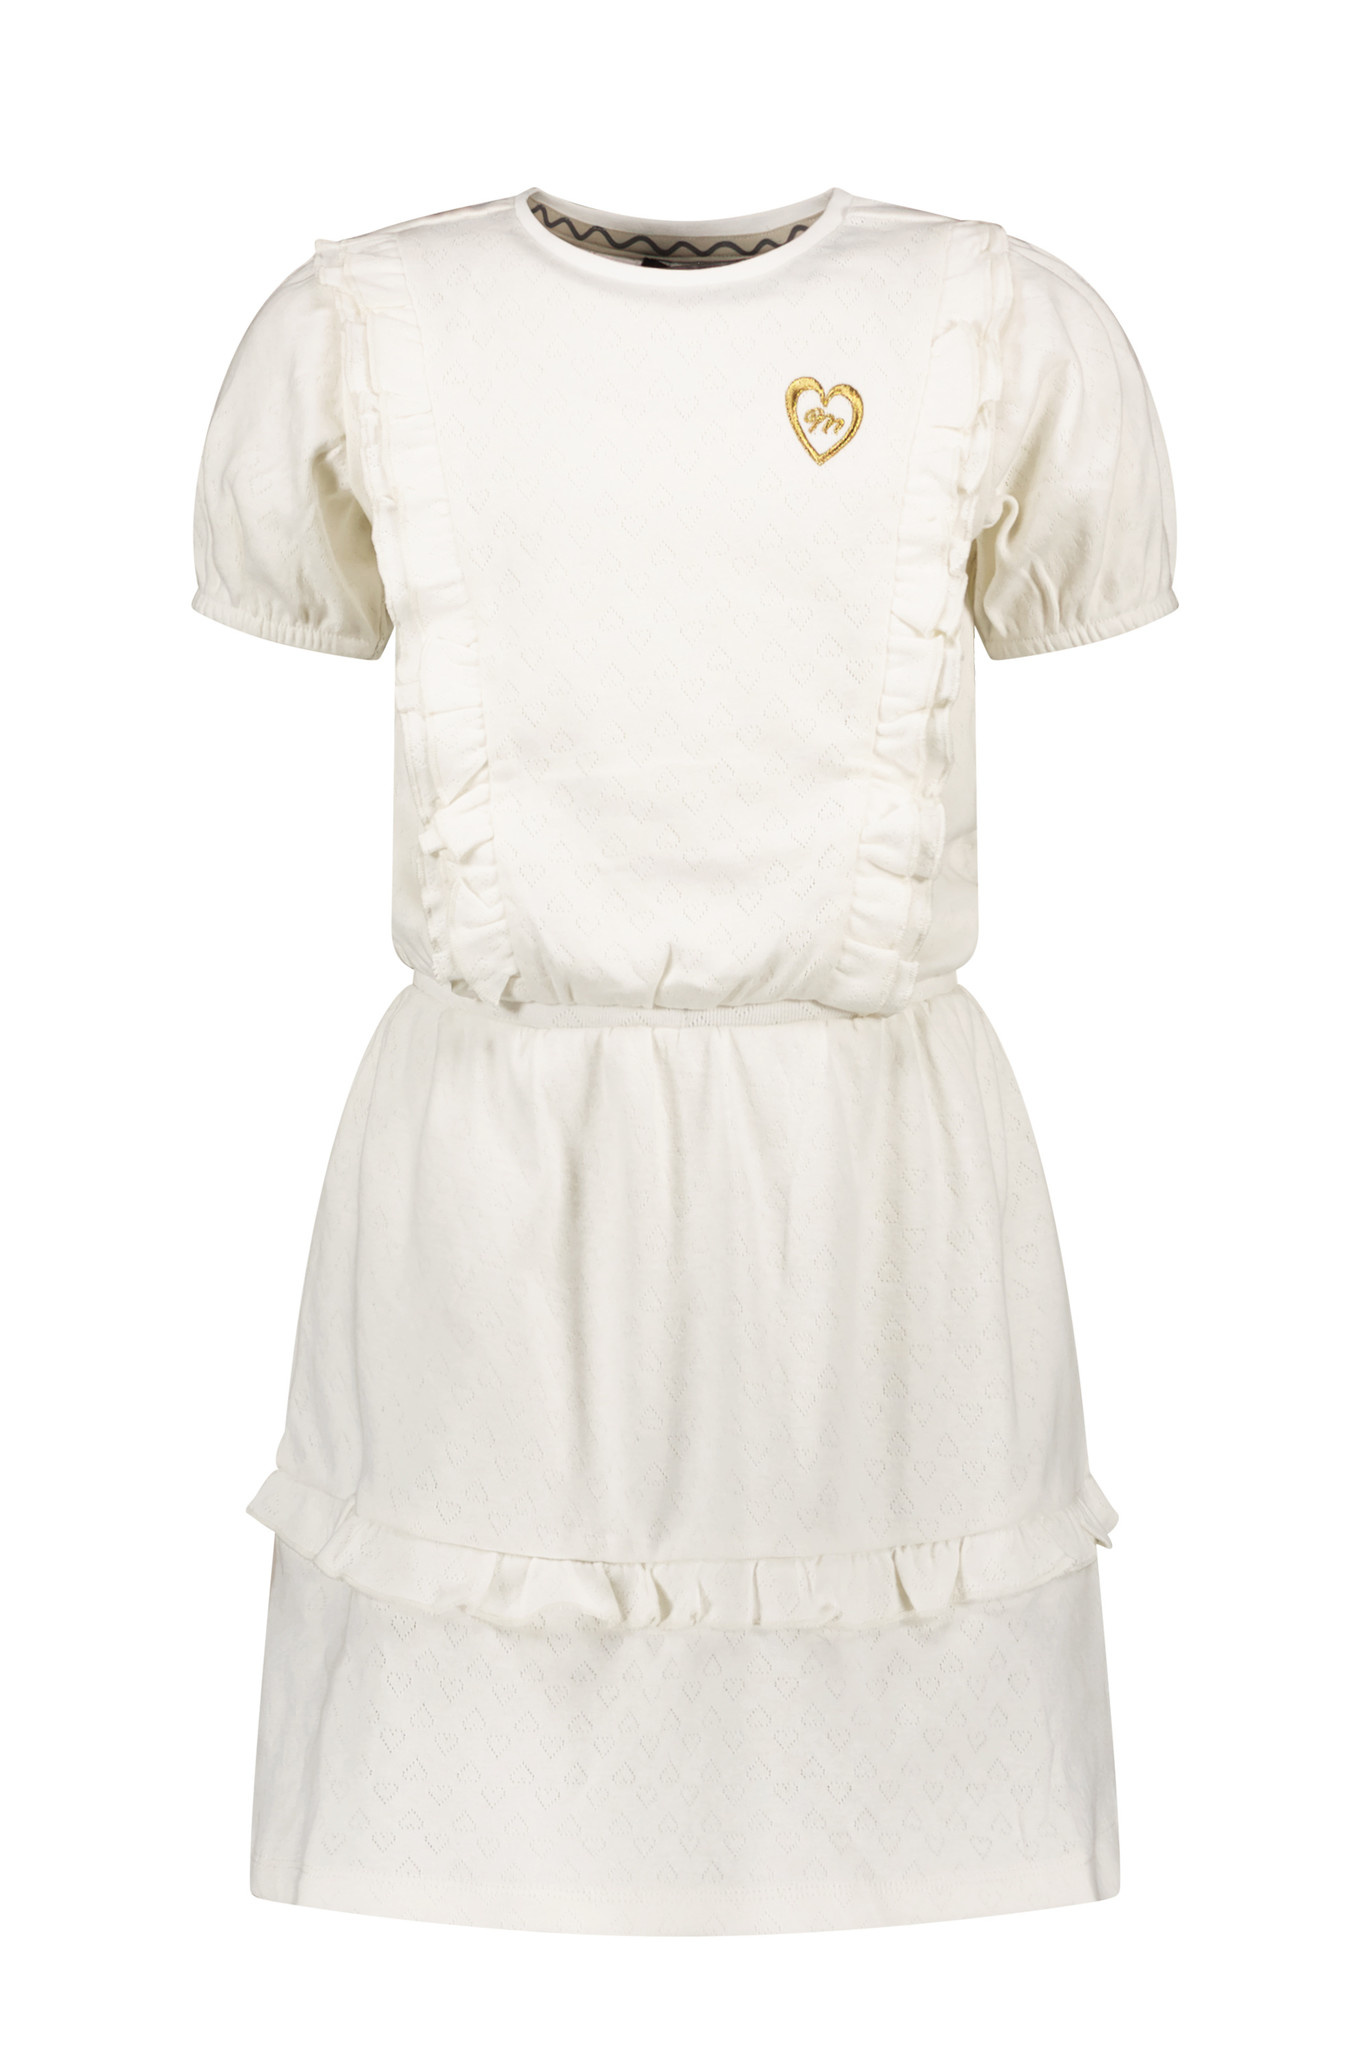 Moodstreet Fancy Dress With Frills And Puffed Sleeves Jurken Meisjes - Rok - Jurk - Gebroken wit - Maat 122/128